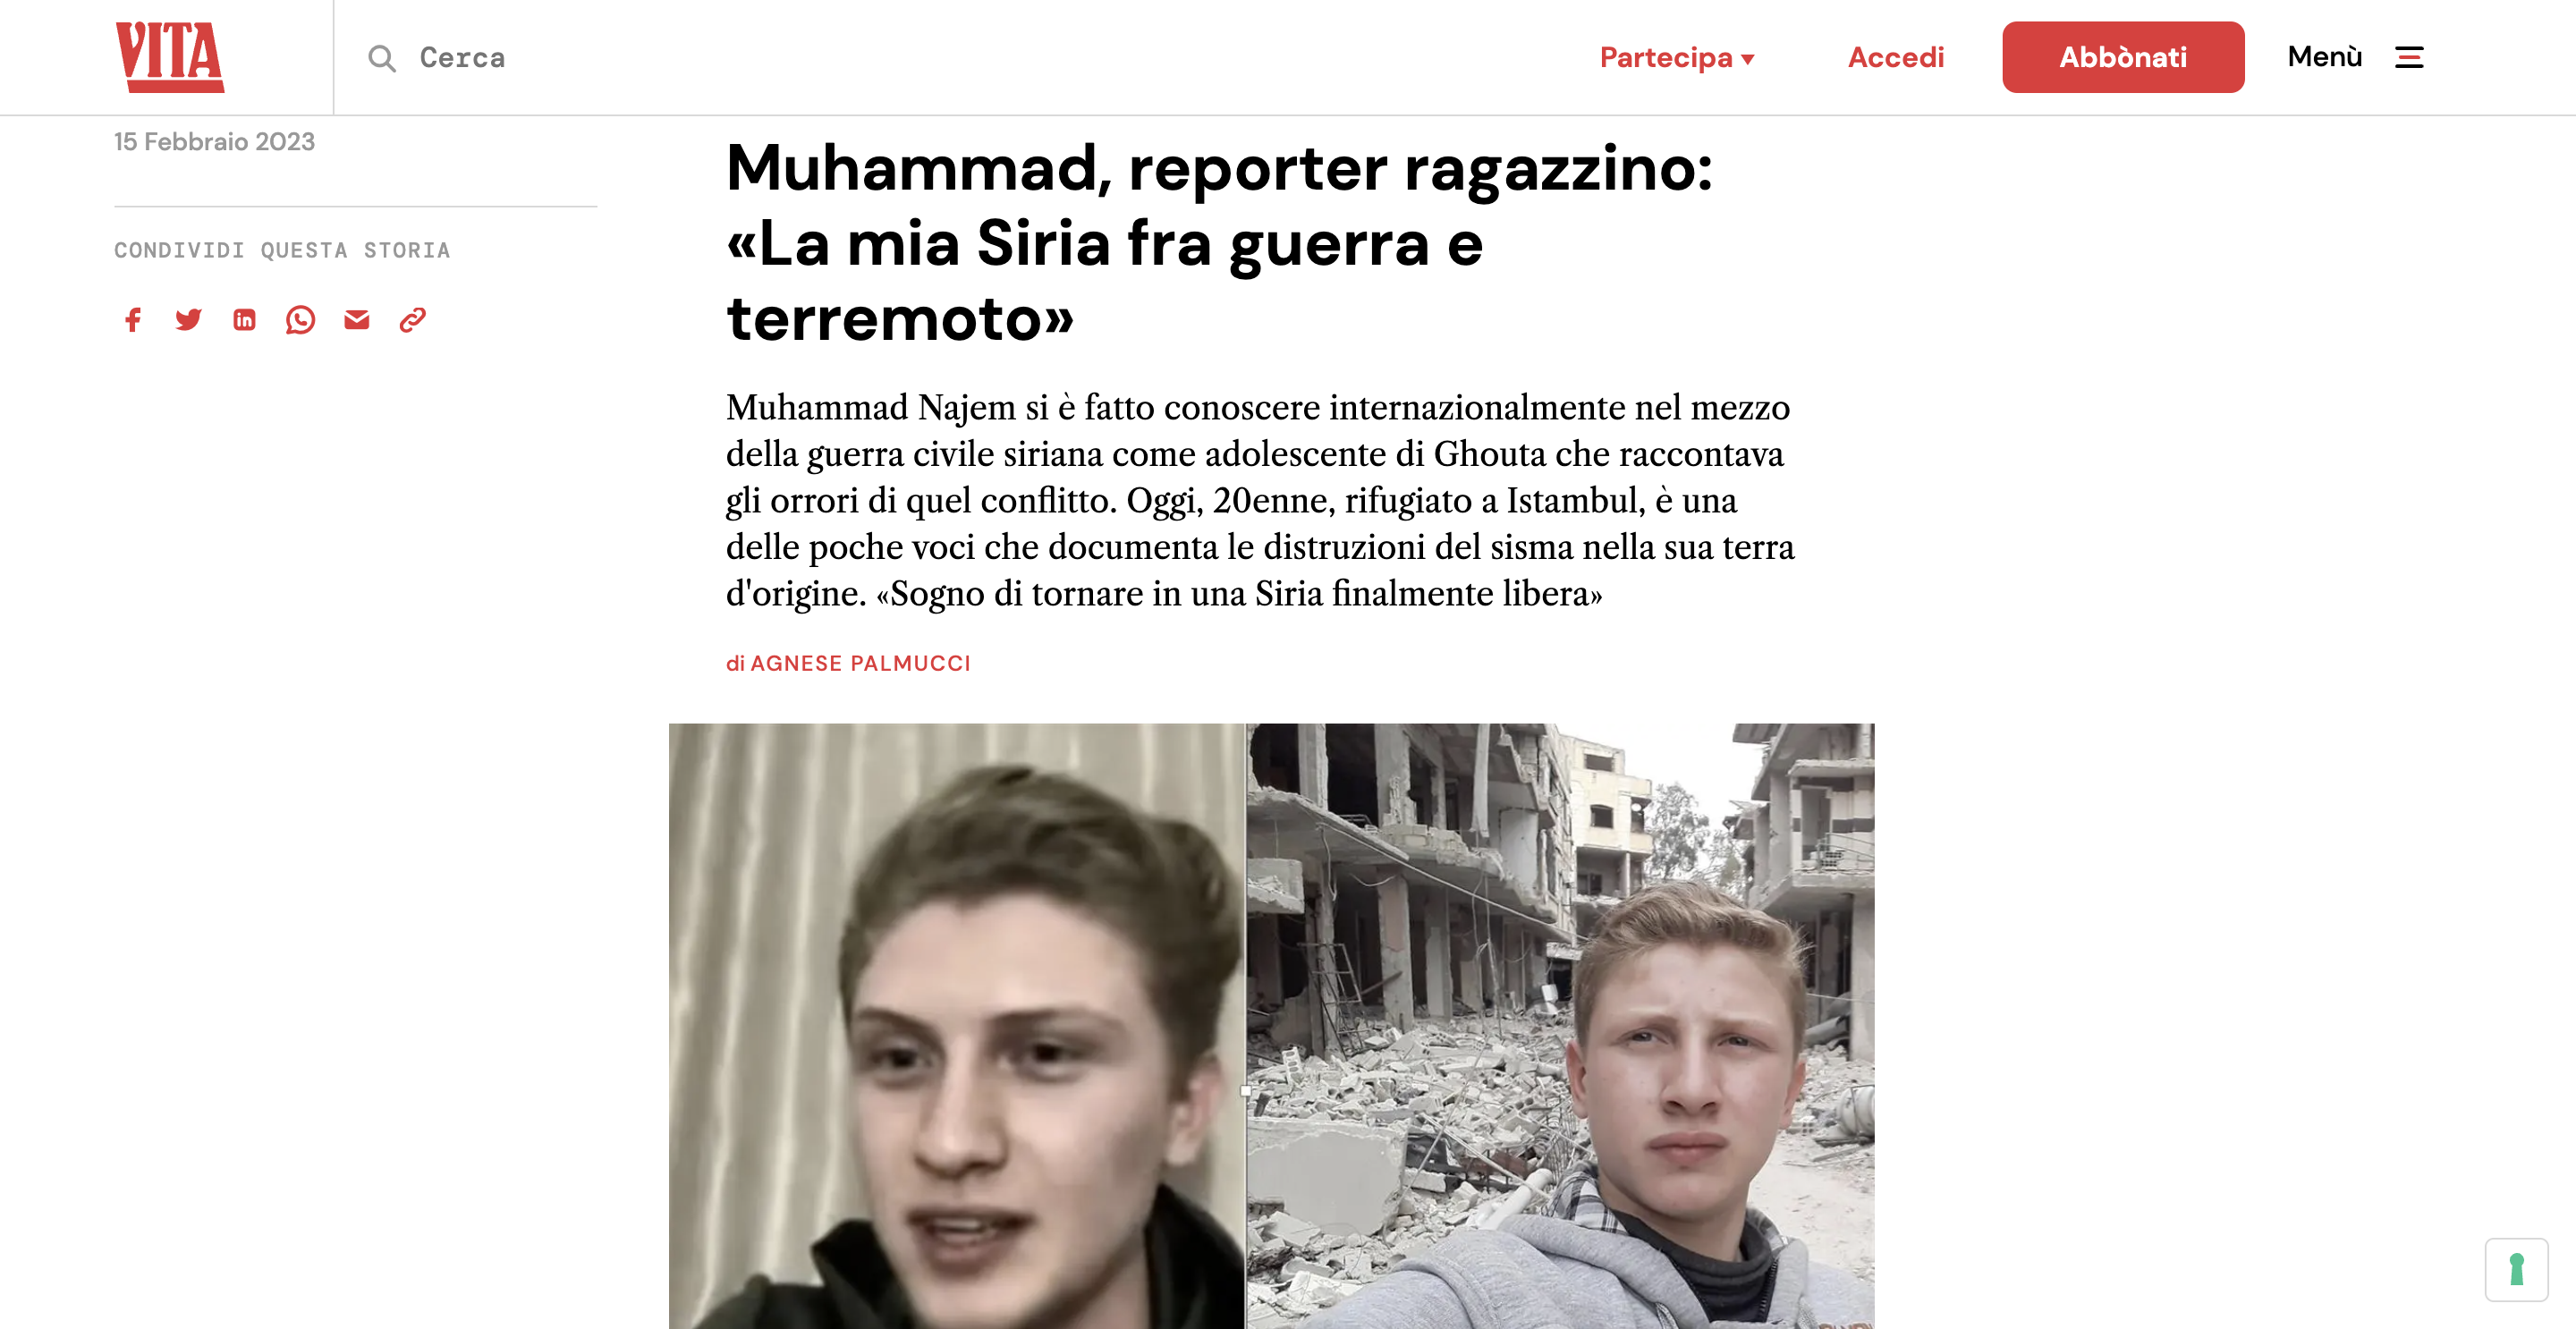 Muhammad, reporter ragazzino: La mia Siria fra guerra e terremoto